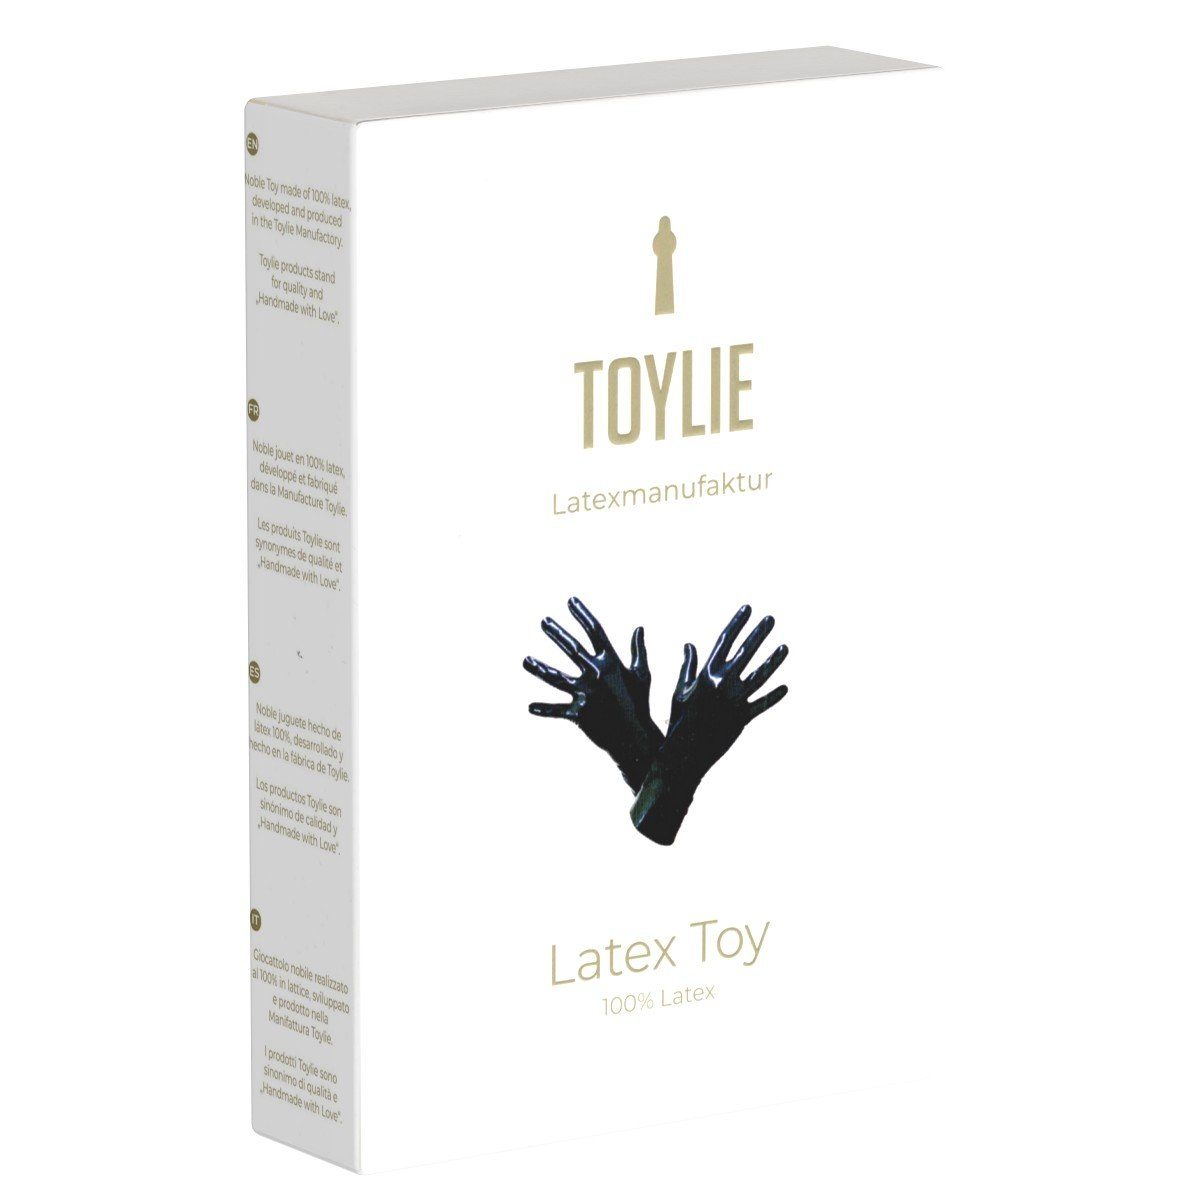 Latexhandschuhe anatomischer nahtlos, Latex Toylie Toylie Handschuhe Passform mit schwarz,